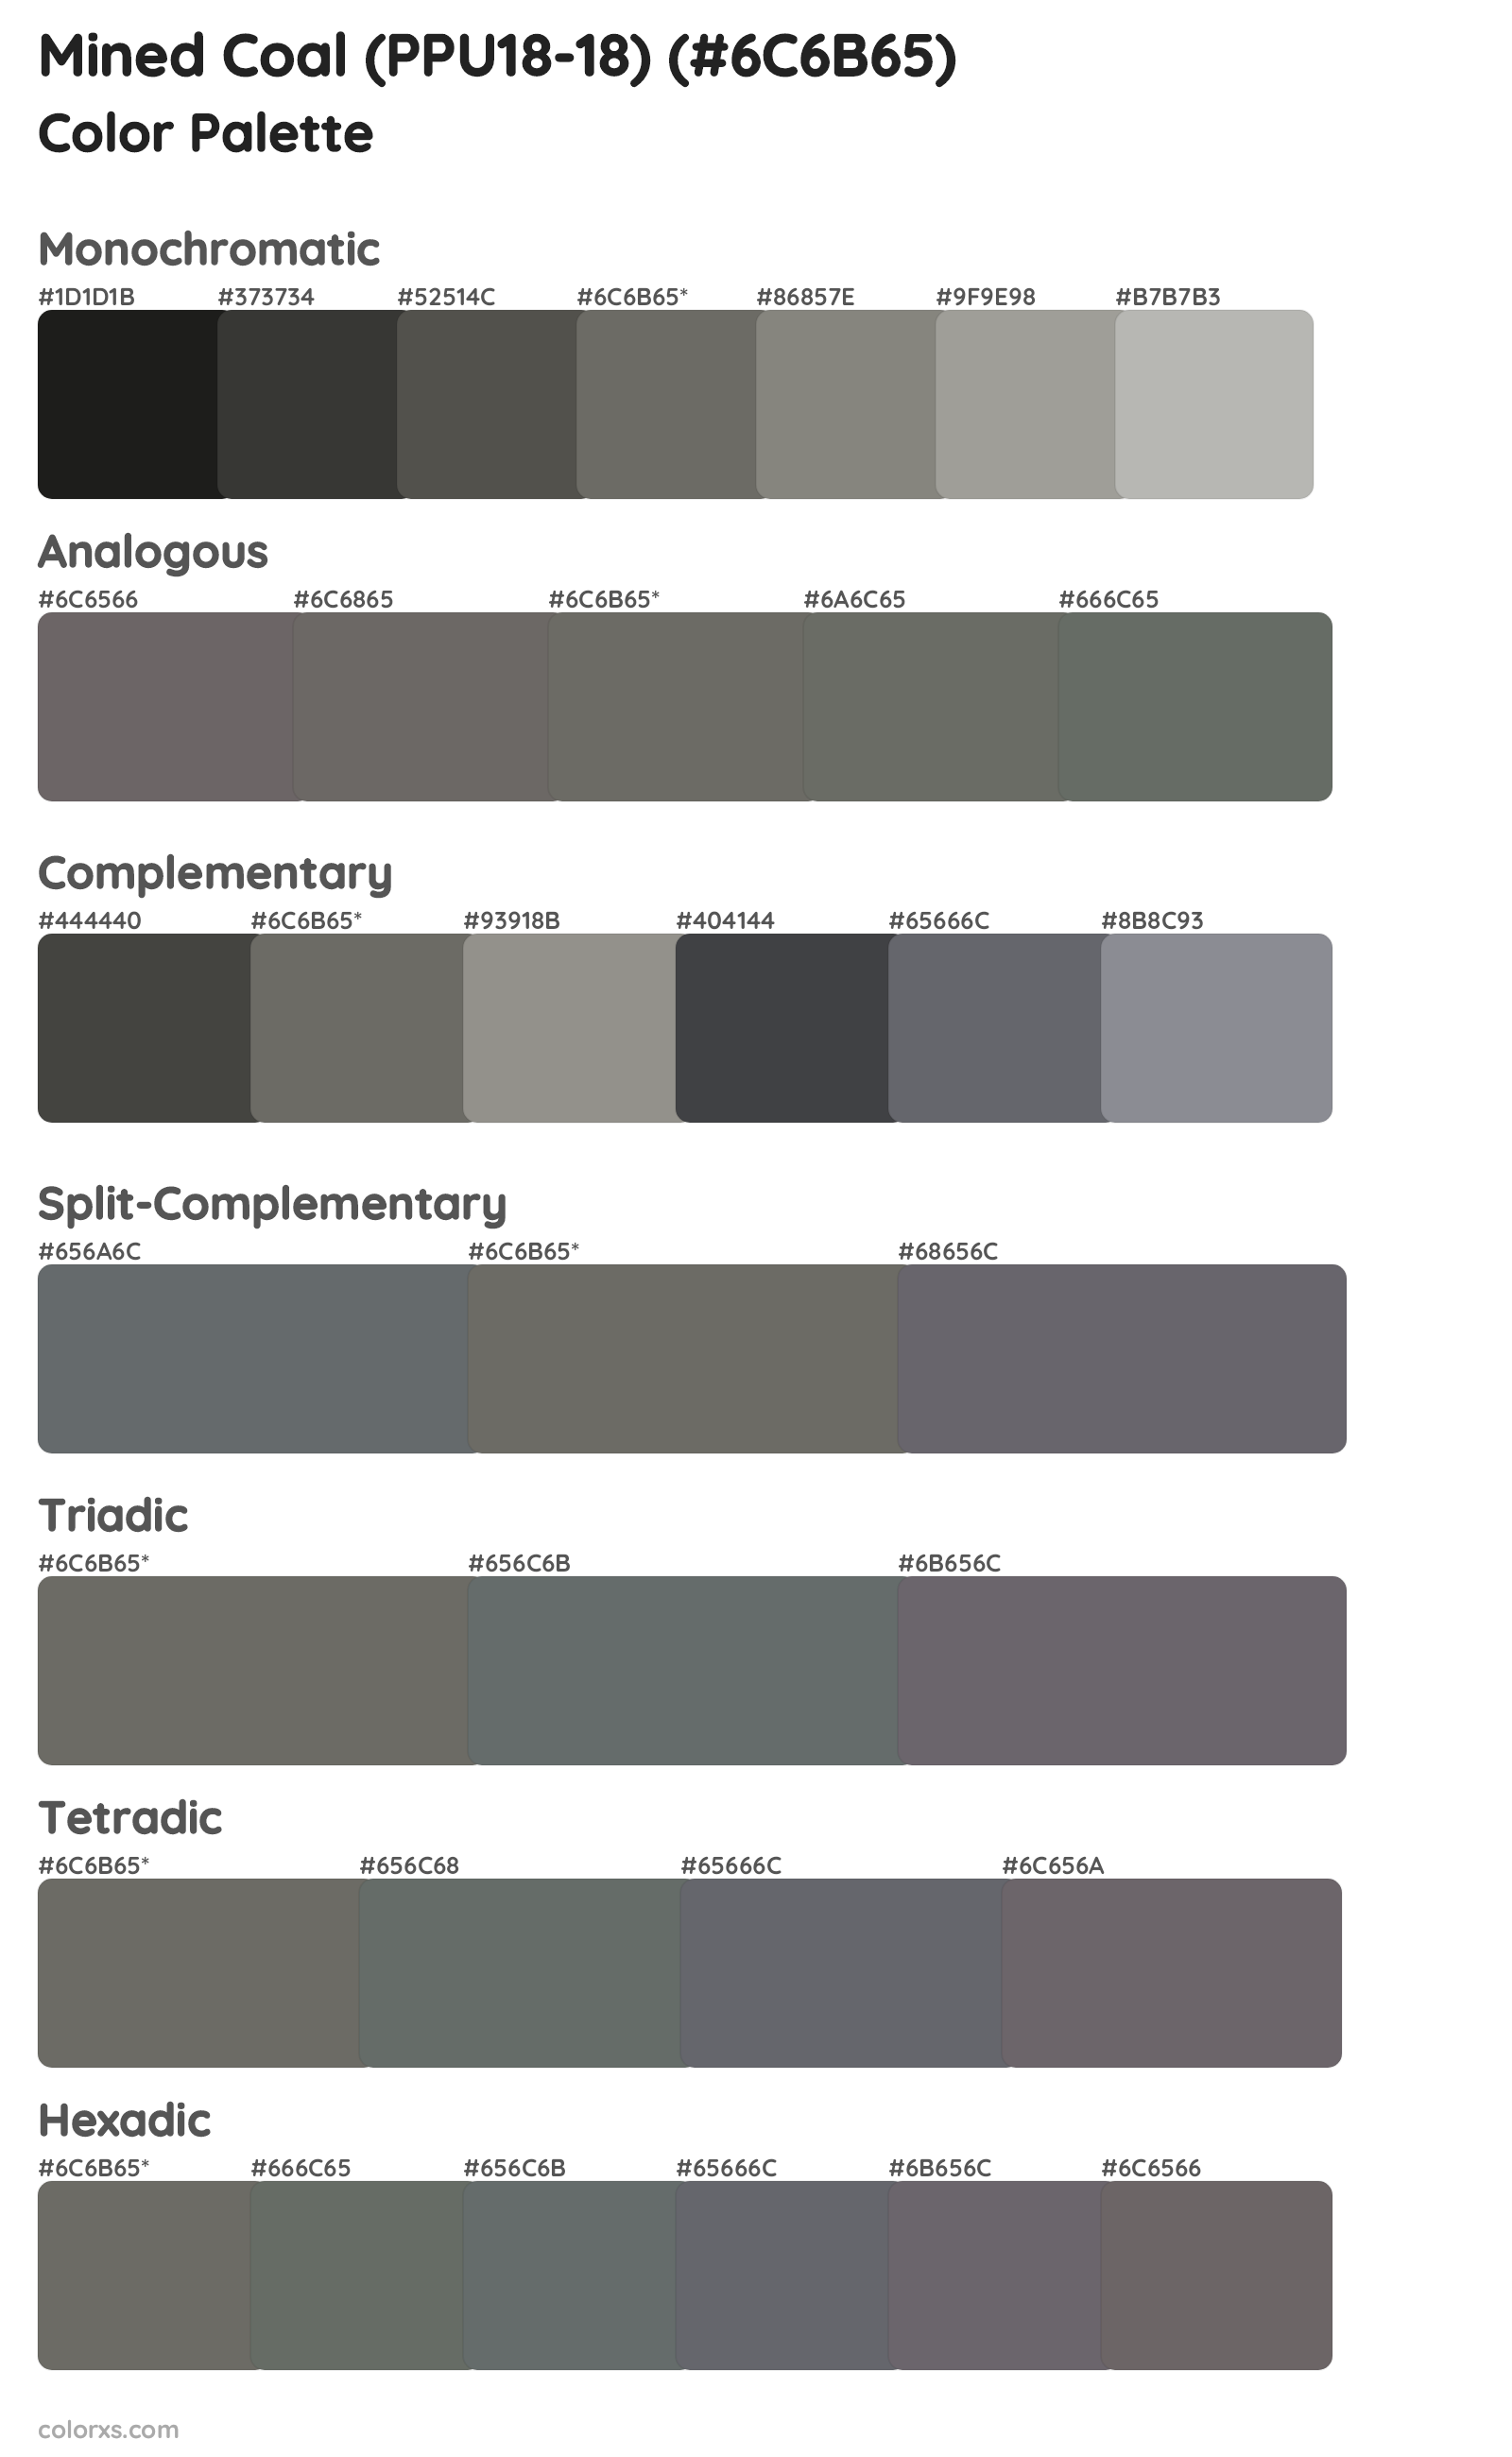 Mined Coal (PPU18-18) Color Scheme Palettes